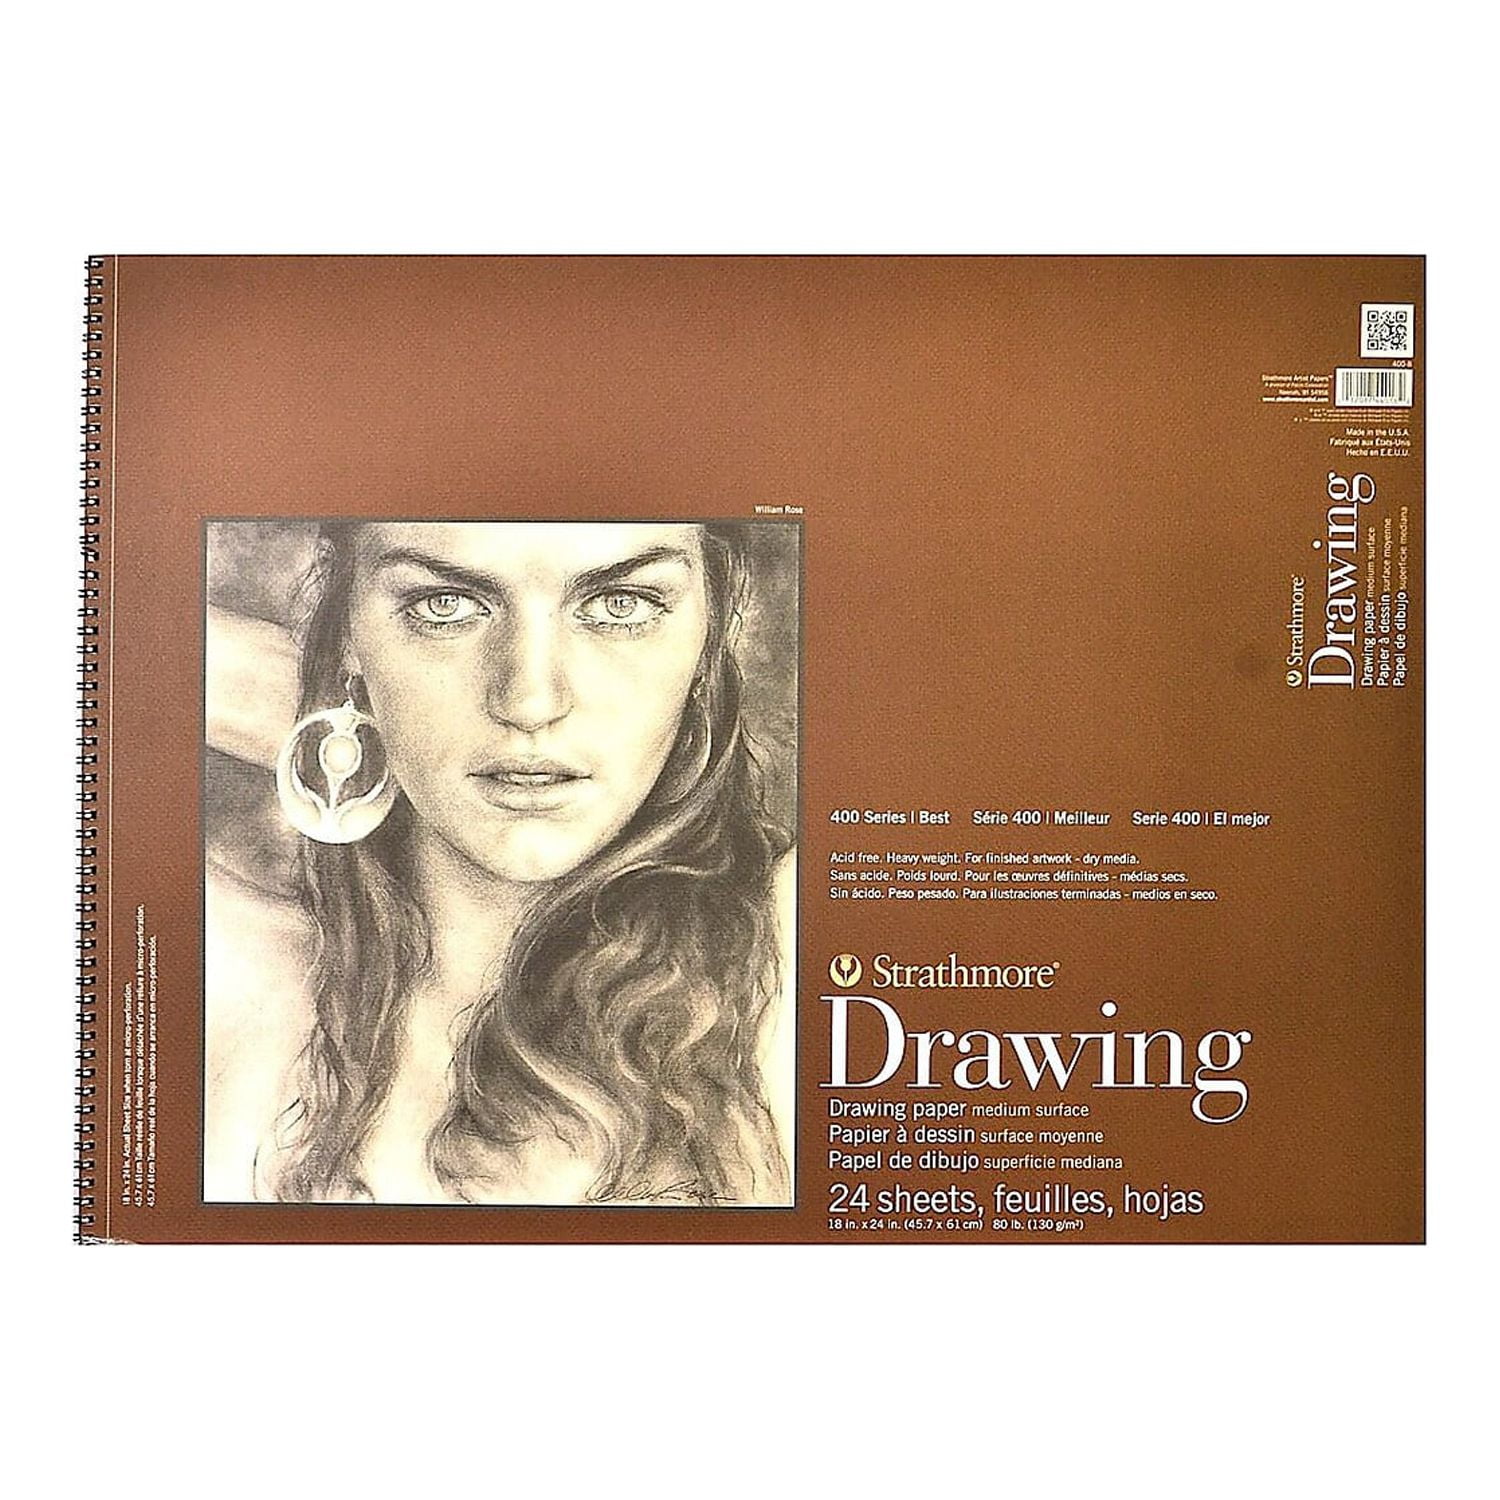 Strathmore 400 Series Hardbound Sketch Book - 11 x 14